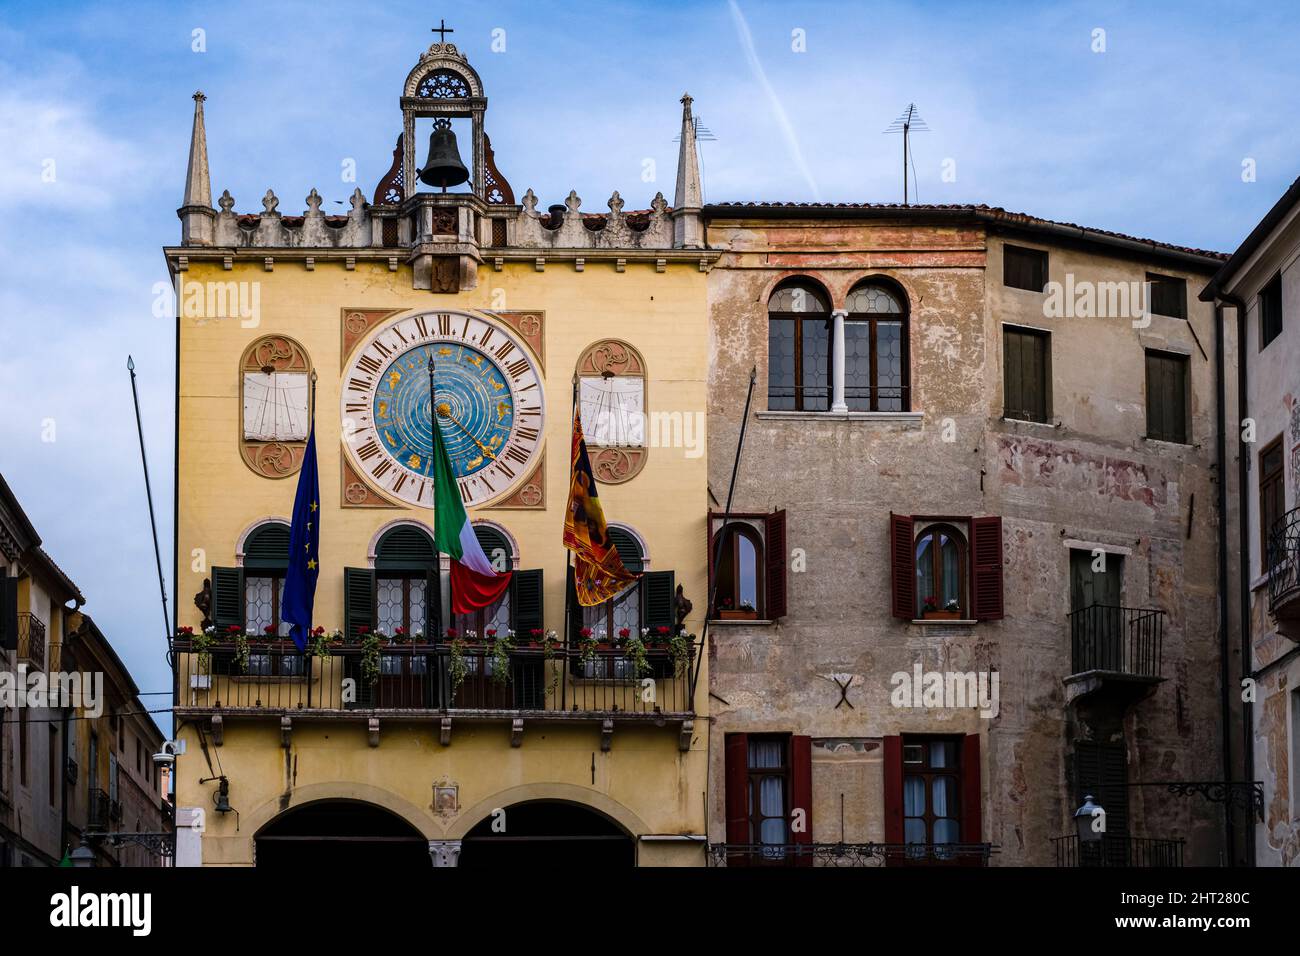 Fachadas de casas medievales de Bassano del Grappa con balcones, un reloj de sol, pequeña torre de reloj y banderas. Foto de stock